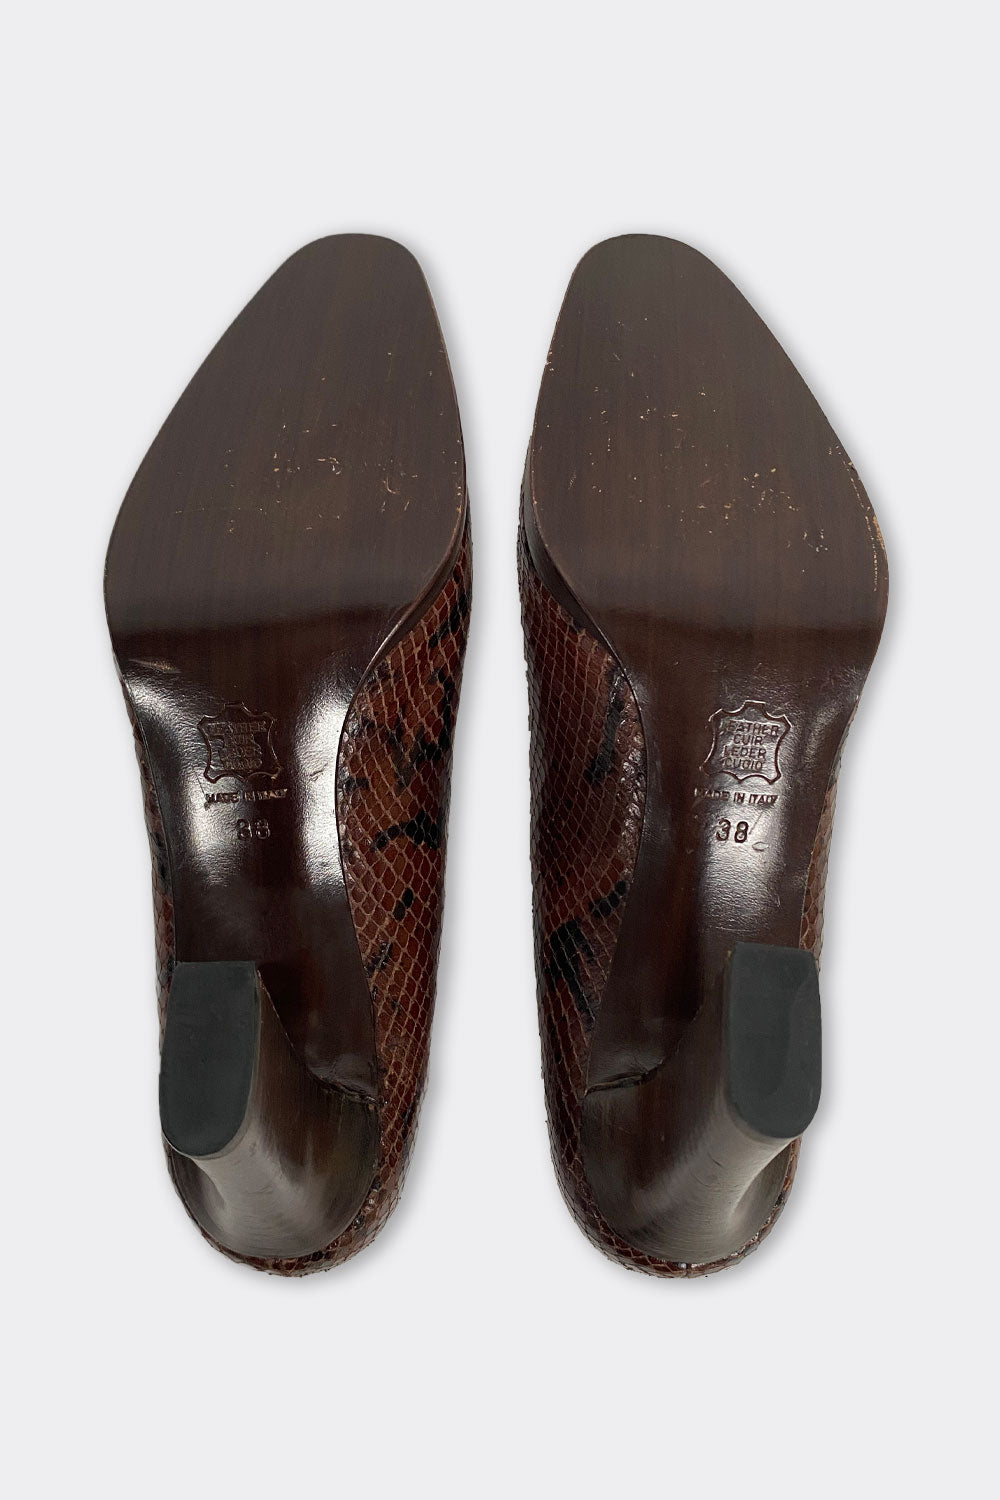 Yves Saint Laurent Vintage Court Shoes Size 38 (UK 5)